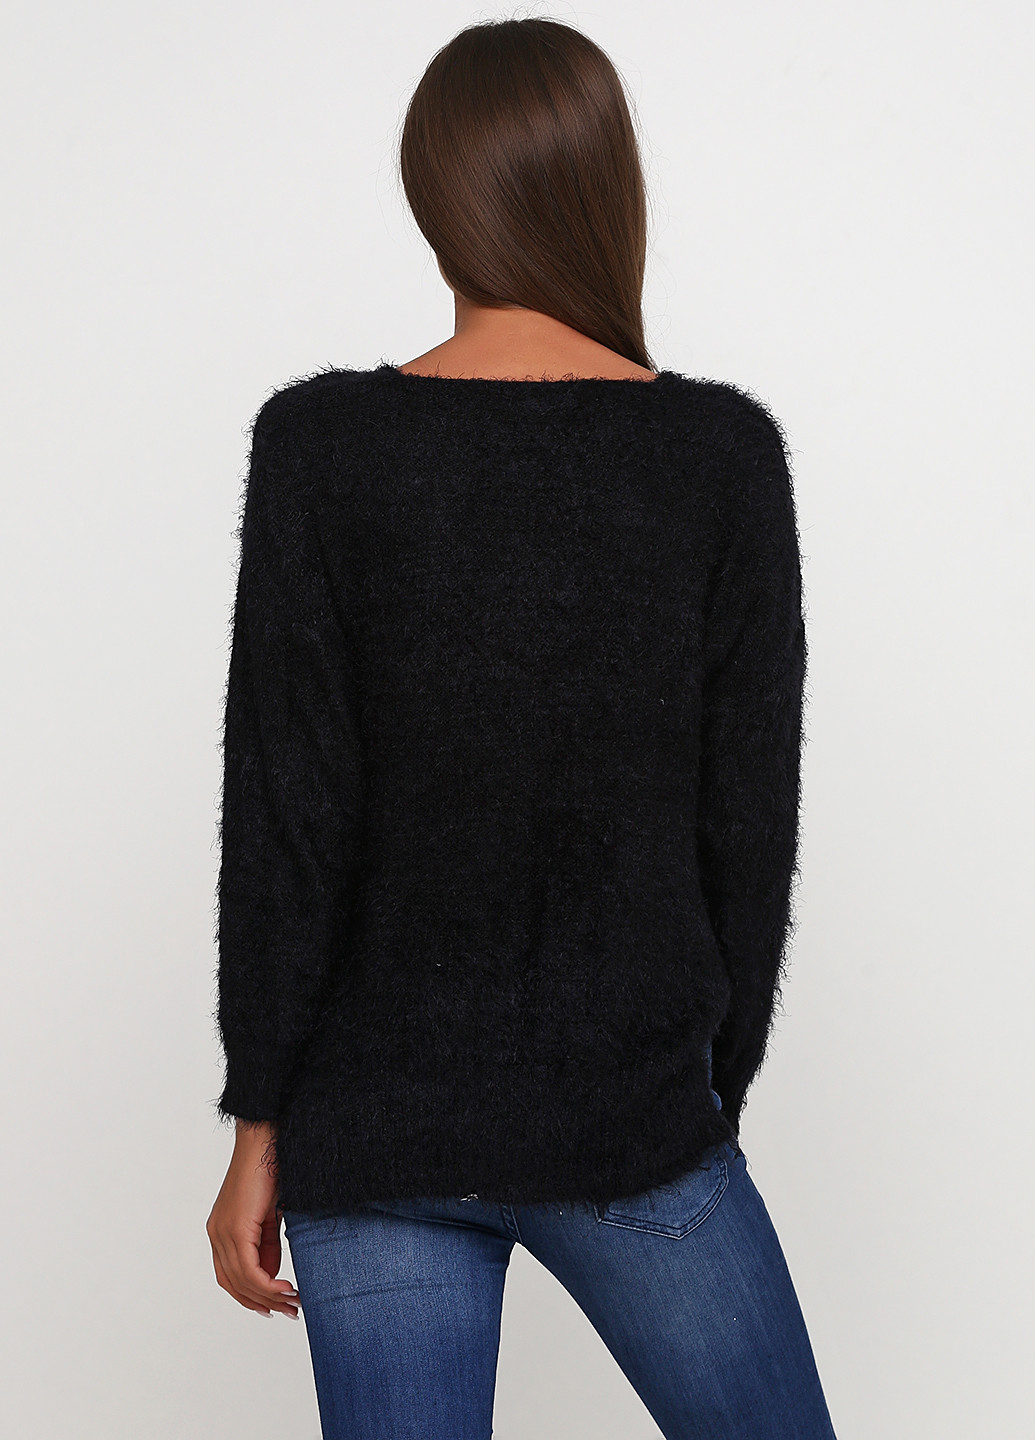 Черный демисезонный пуловер пуловер Miss Poem